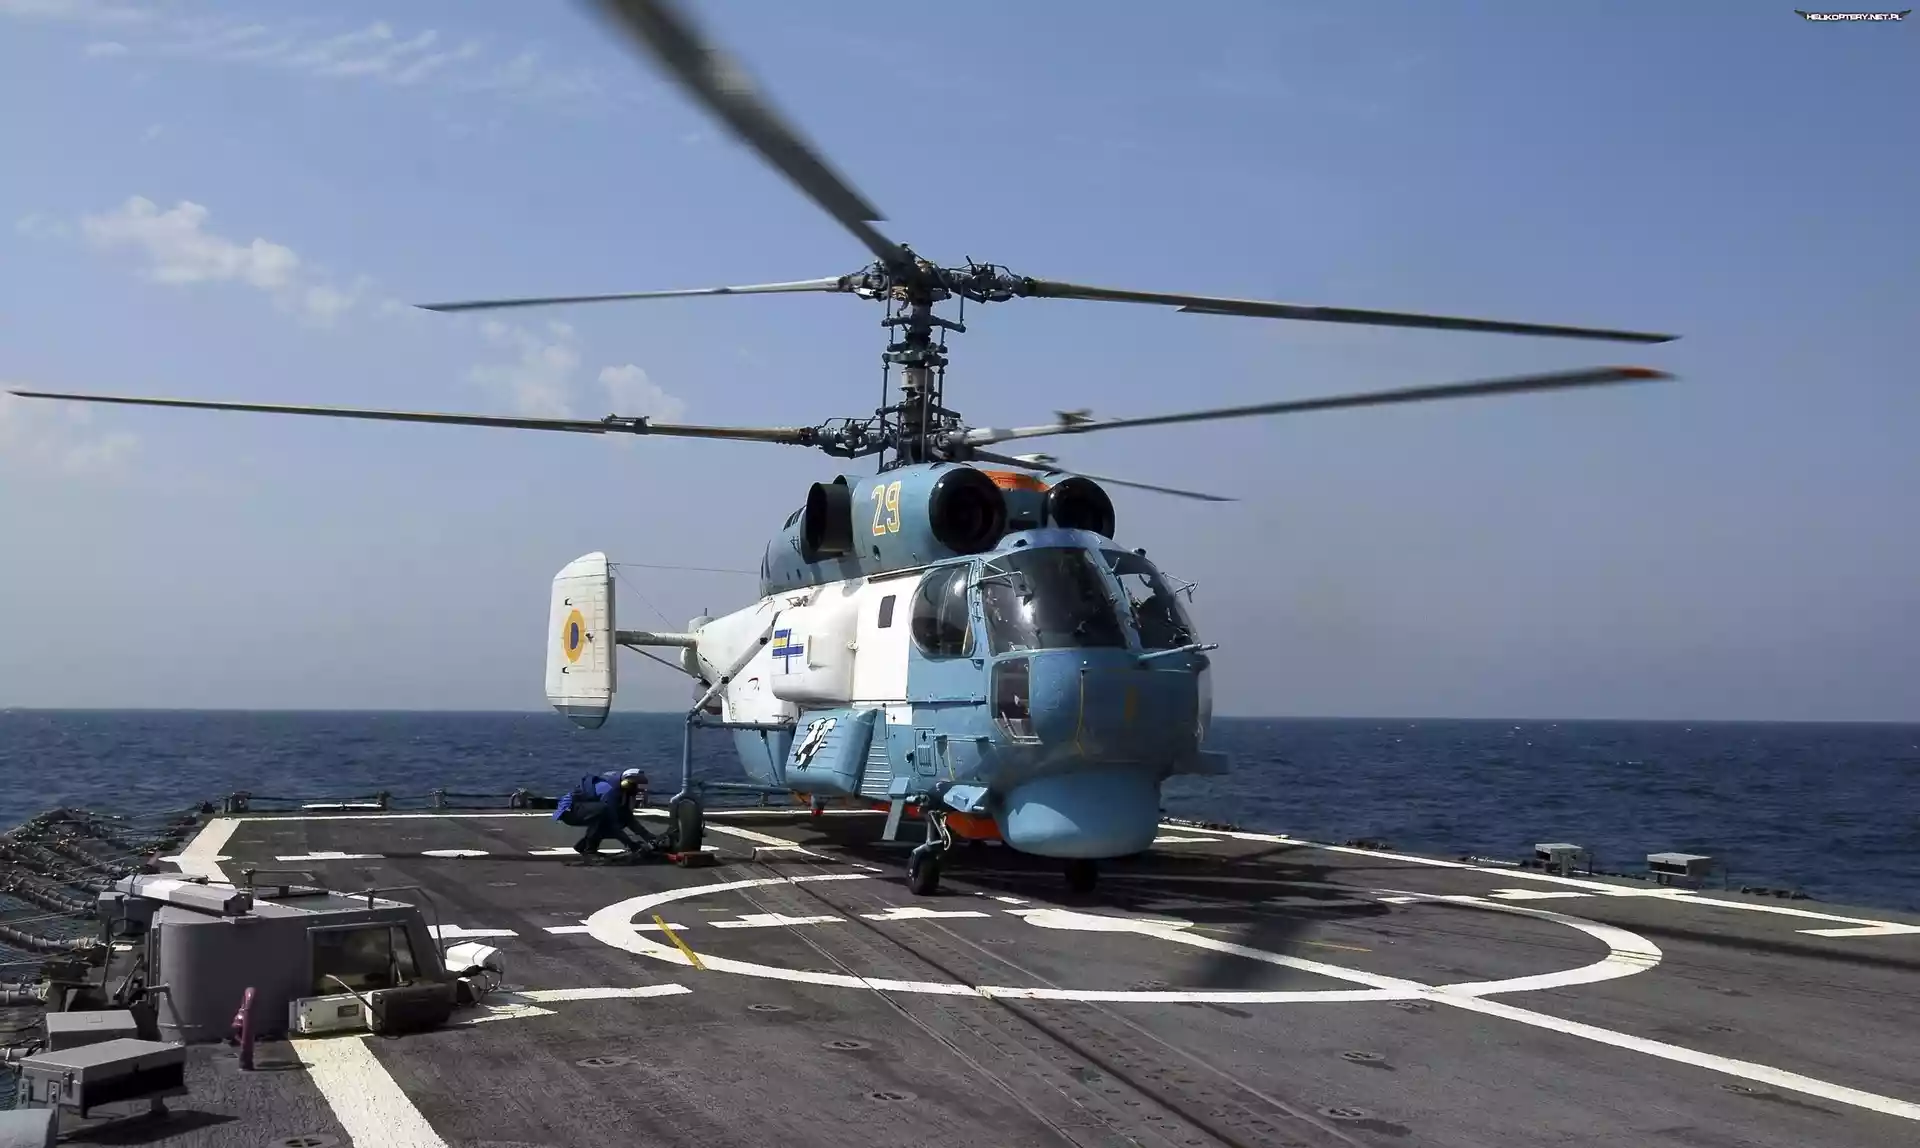 Helikopter, Kamov Ka-27